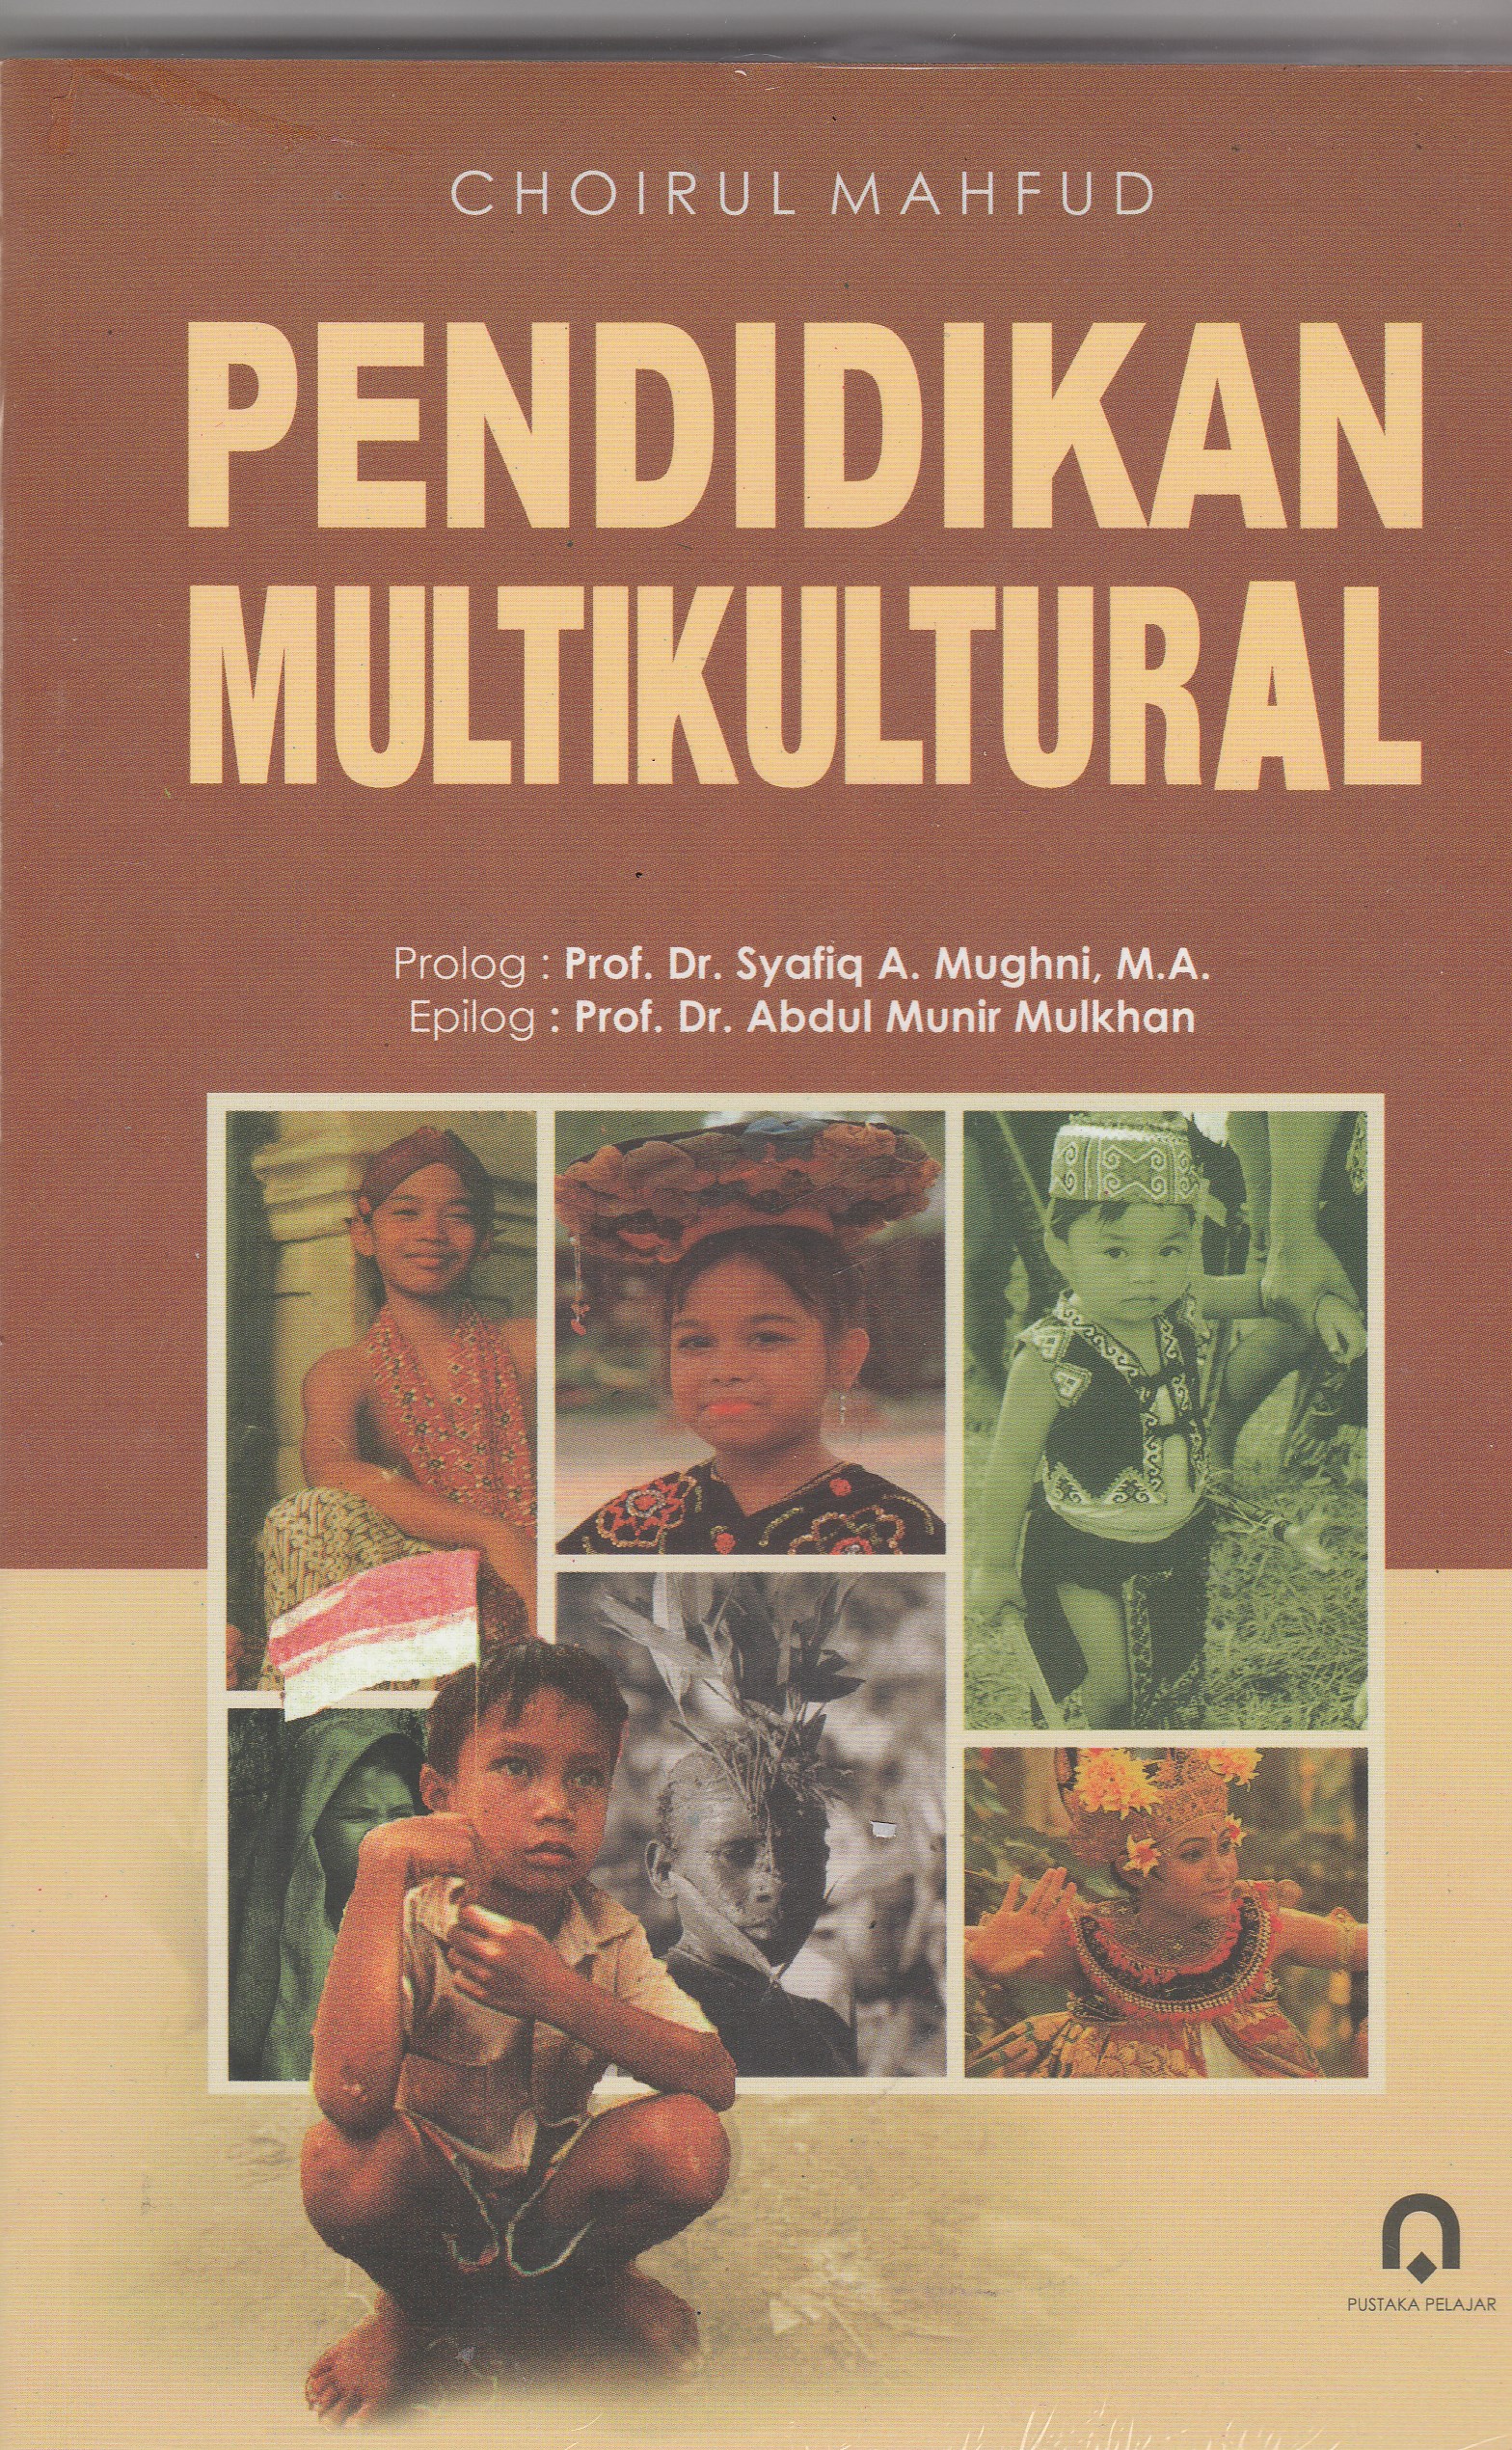 Pendidikan Multikultural (Edisi Revisi)